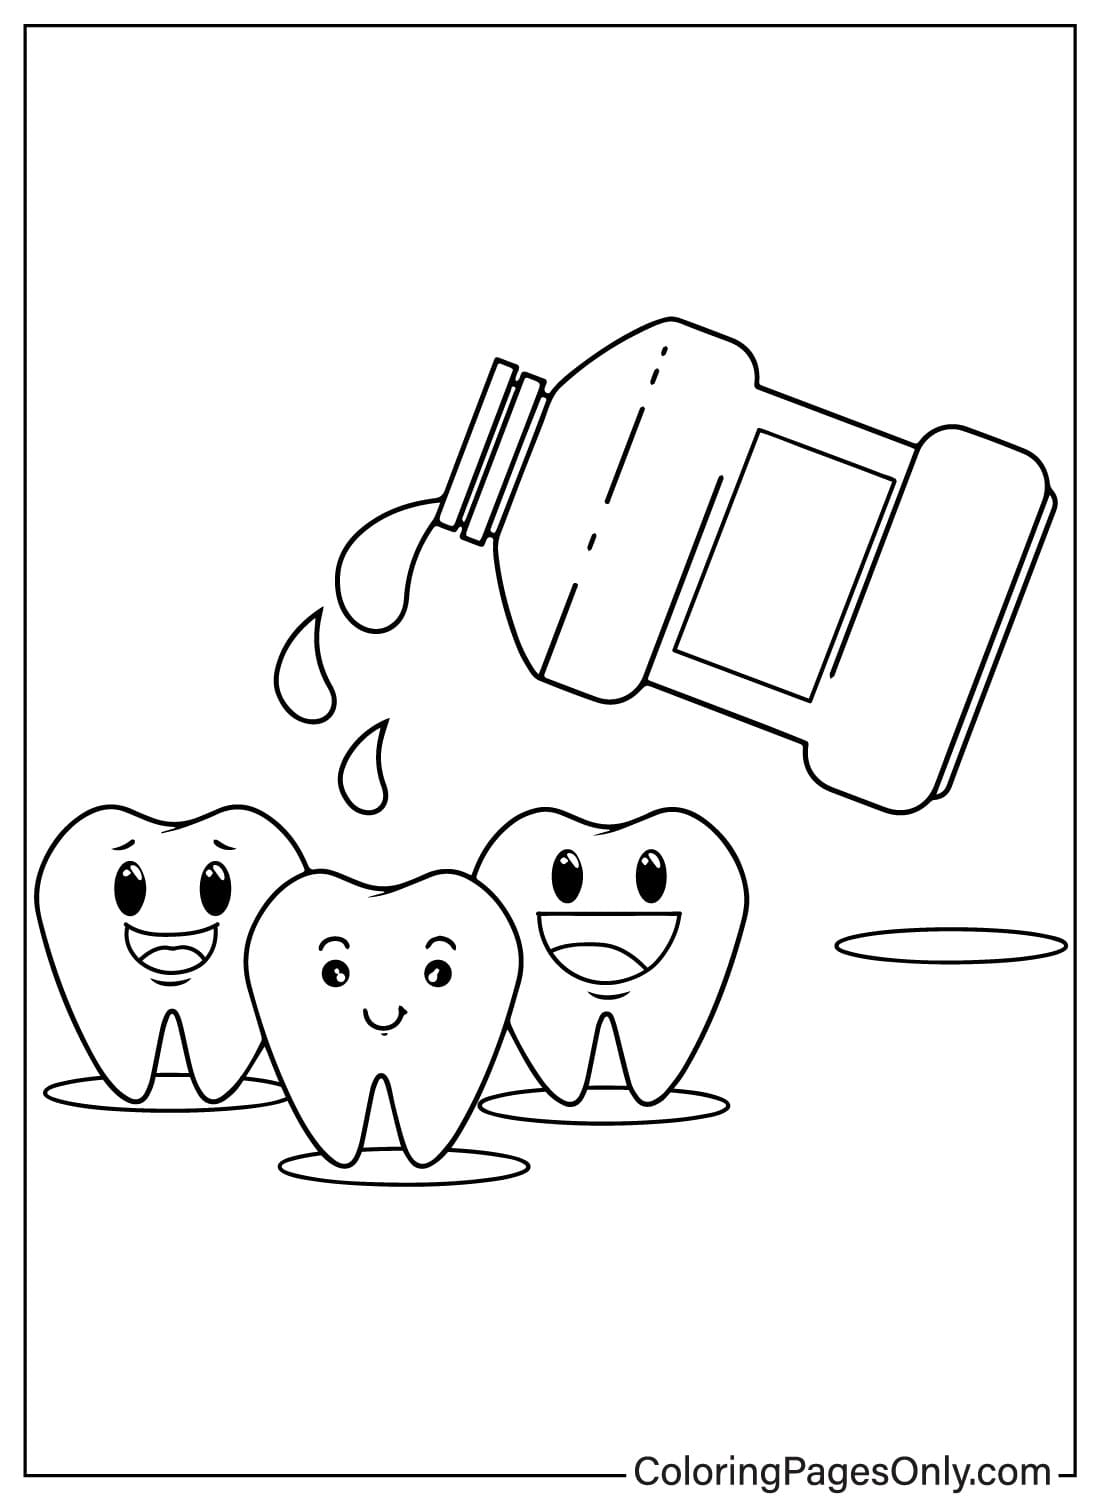 Раскраска с изображением зубов